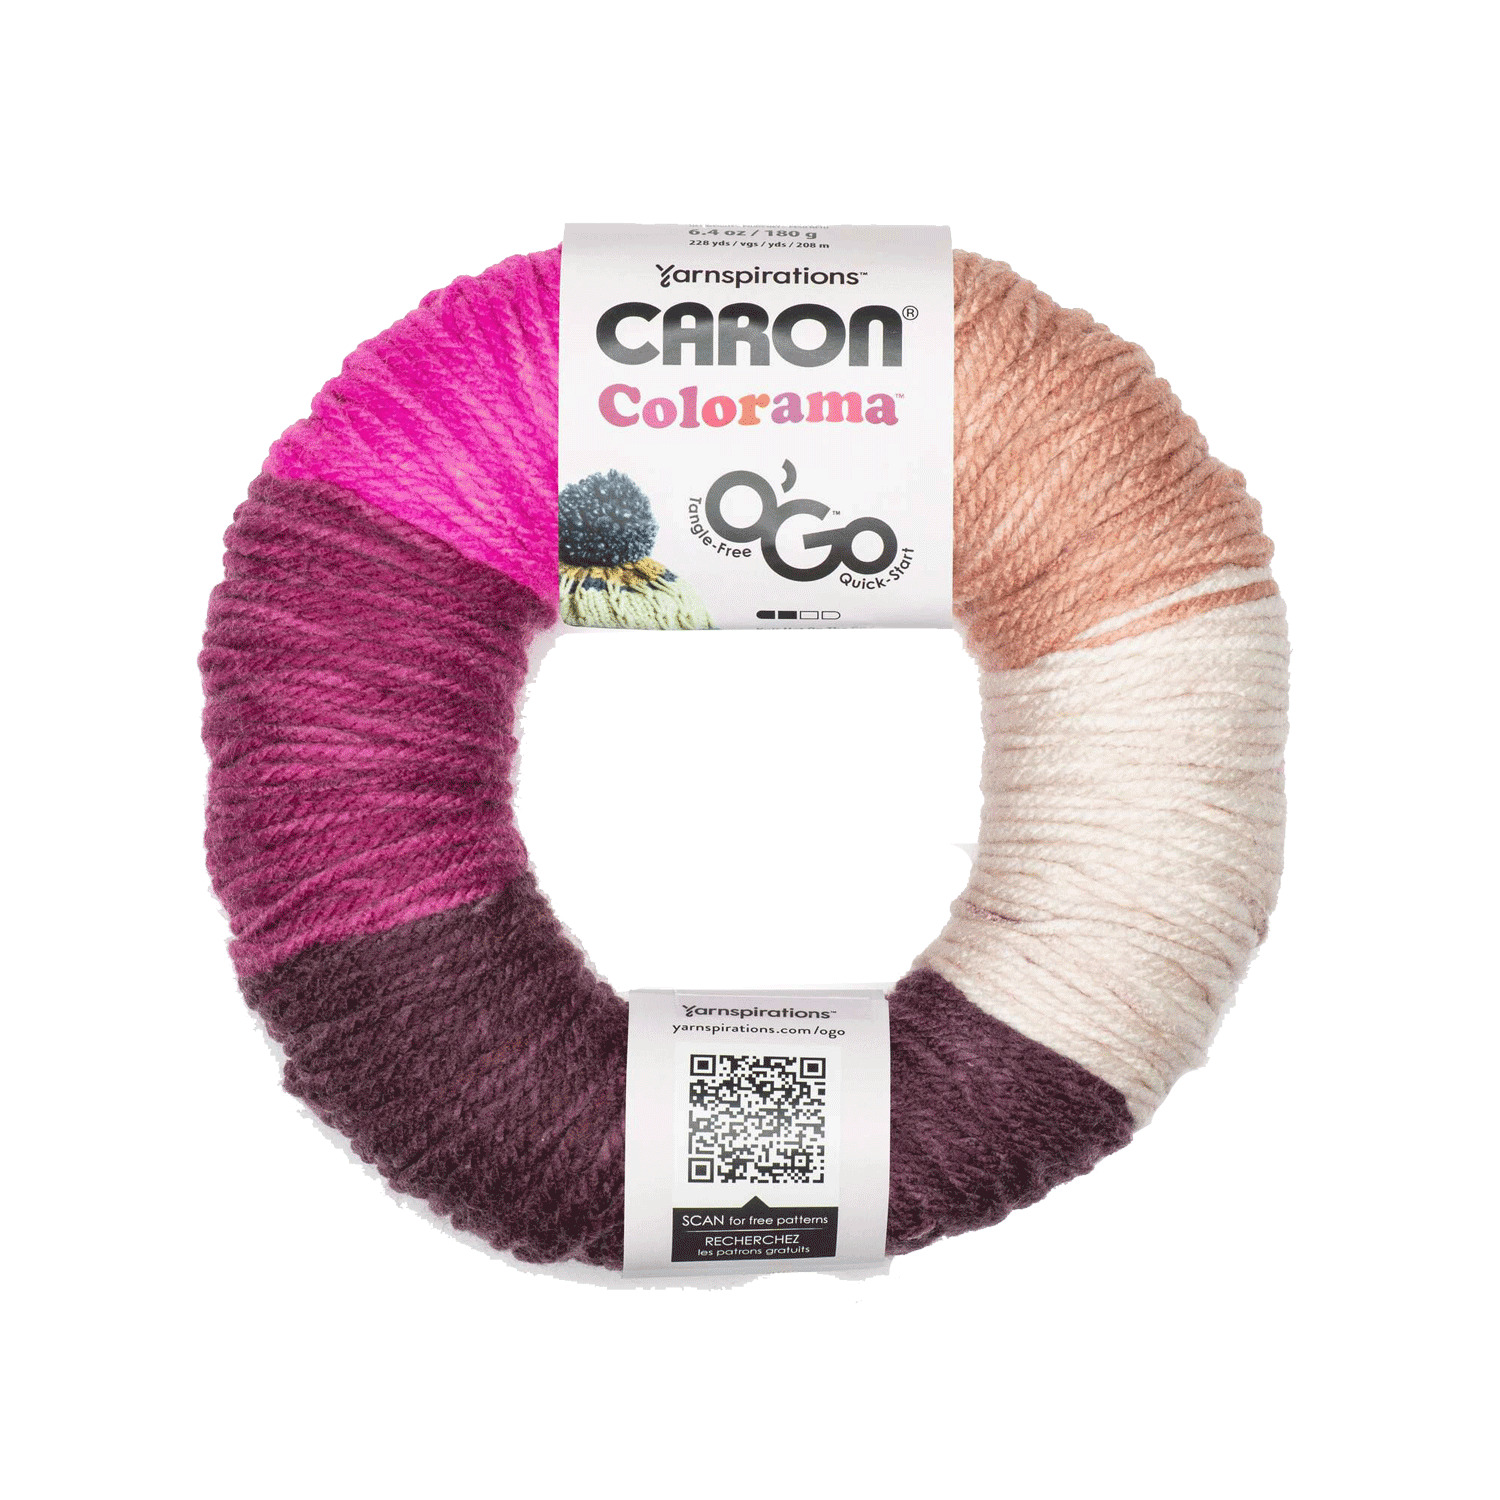 Caron - Colorama O'Go - Yarn, Lippy